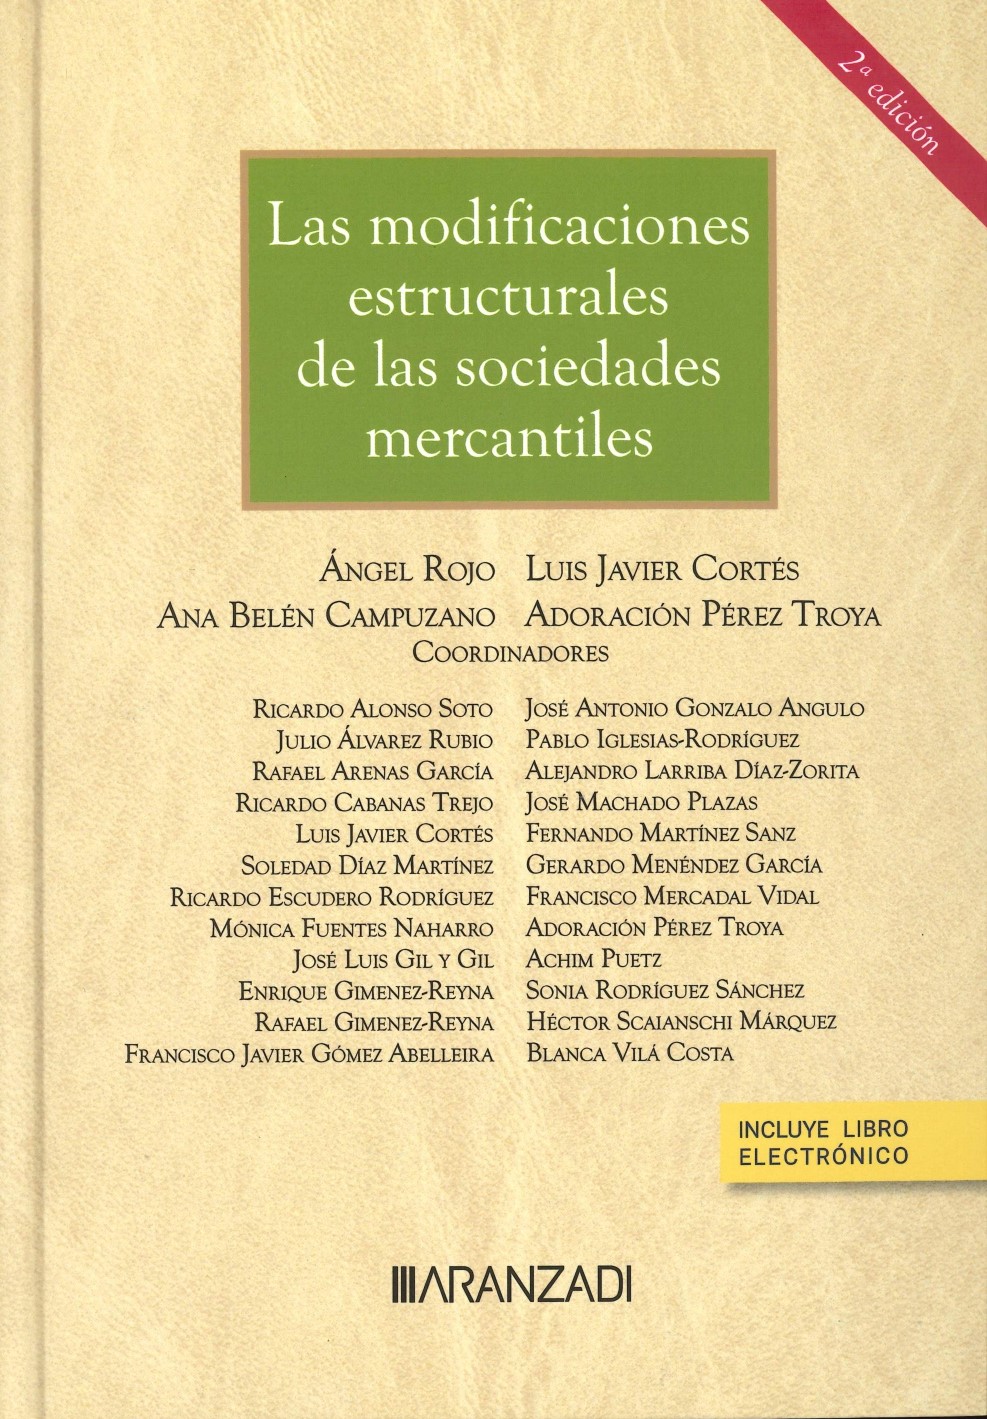 Imagen de portada del libro Las modificaciones estructurales de las sociedades mercantiles